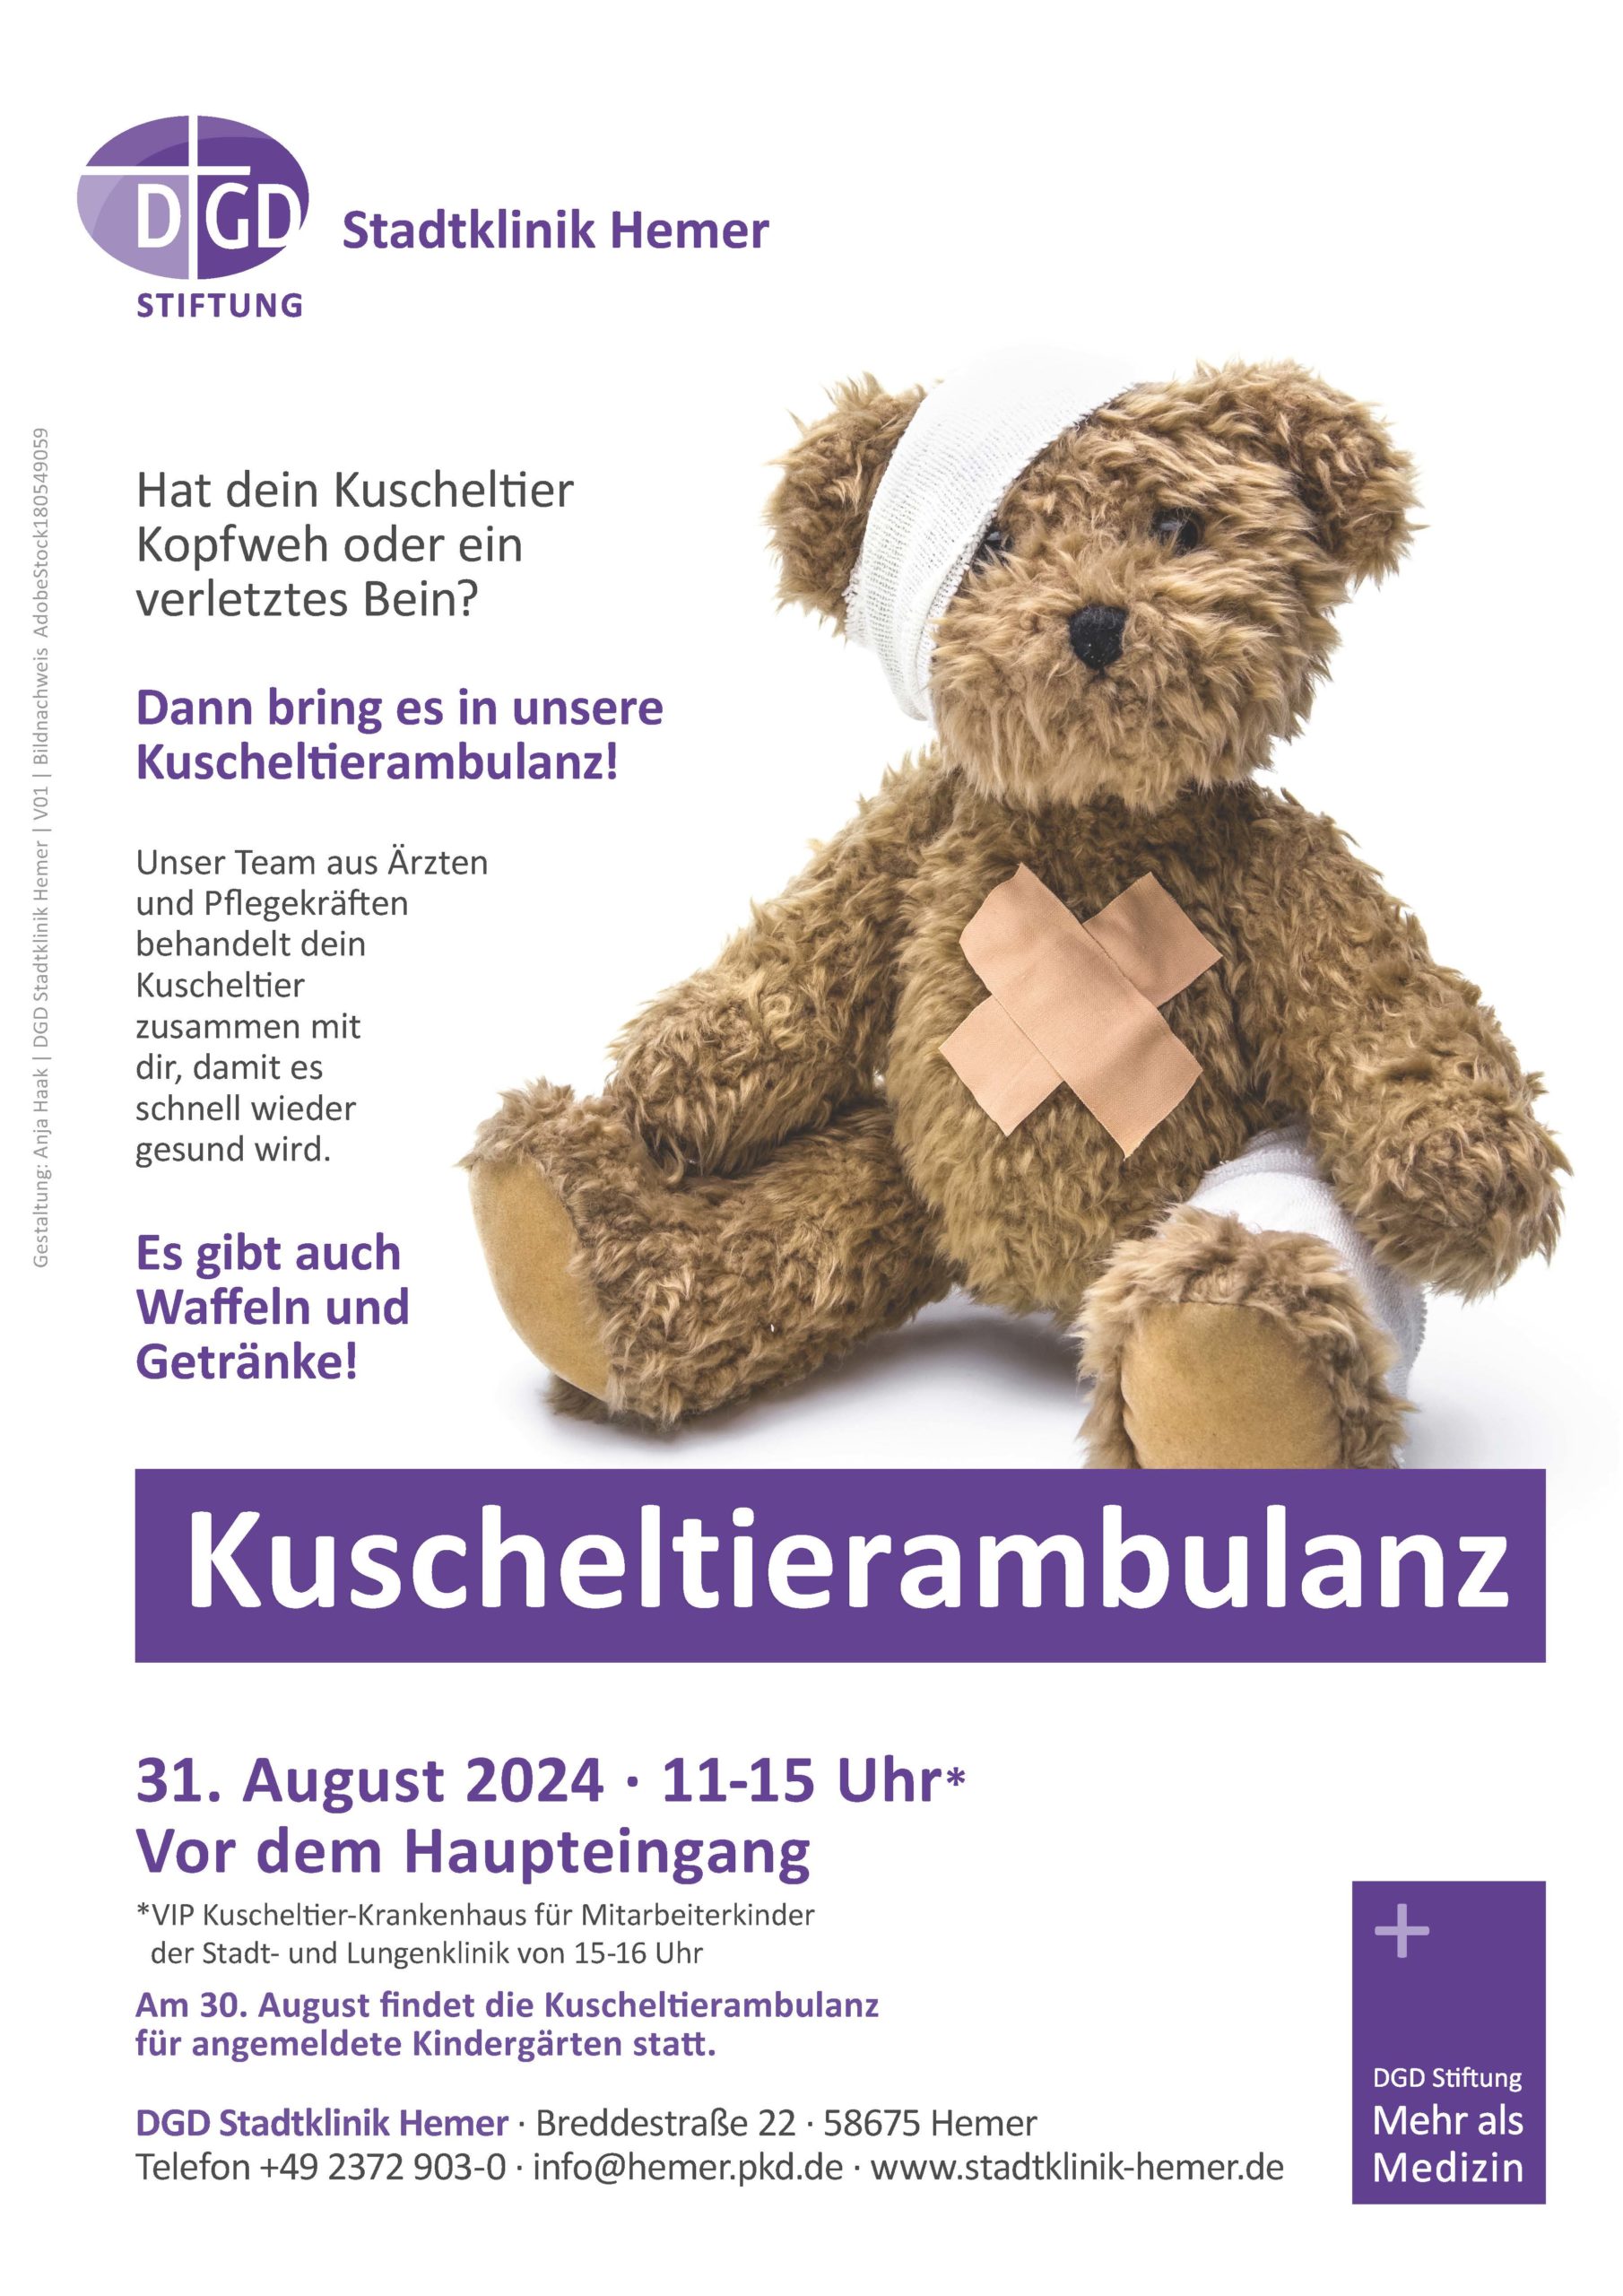 SAVE THE DATE: Kuscheltierambulanz am 31. August 2024 in der DGD Stadtklinik Hemer